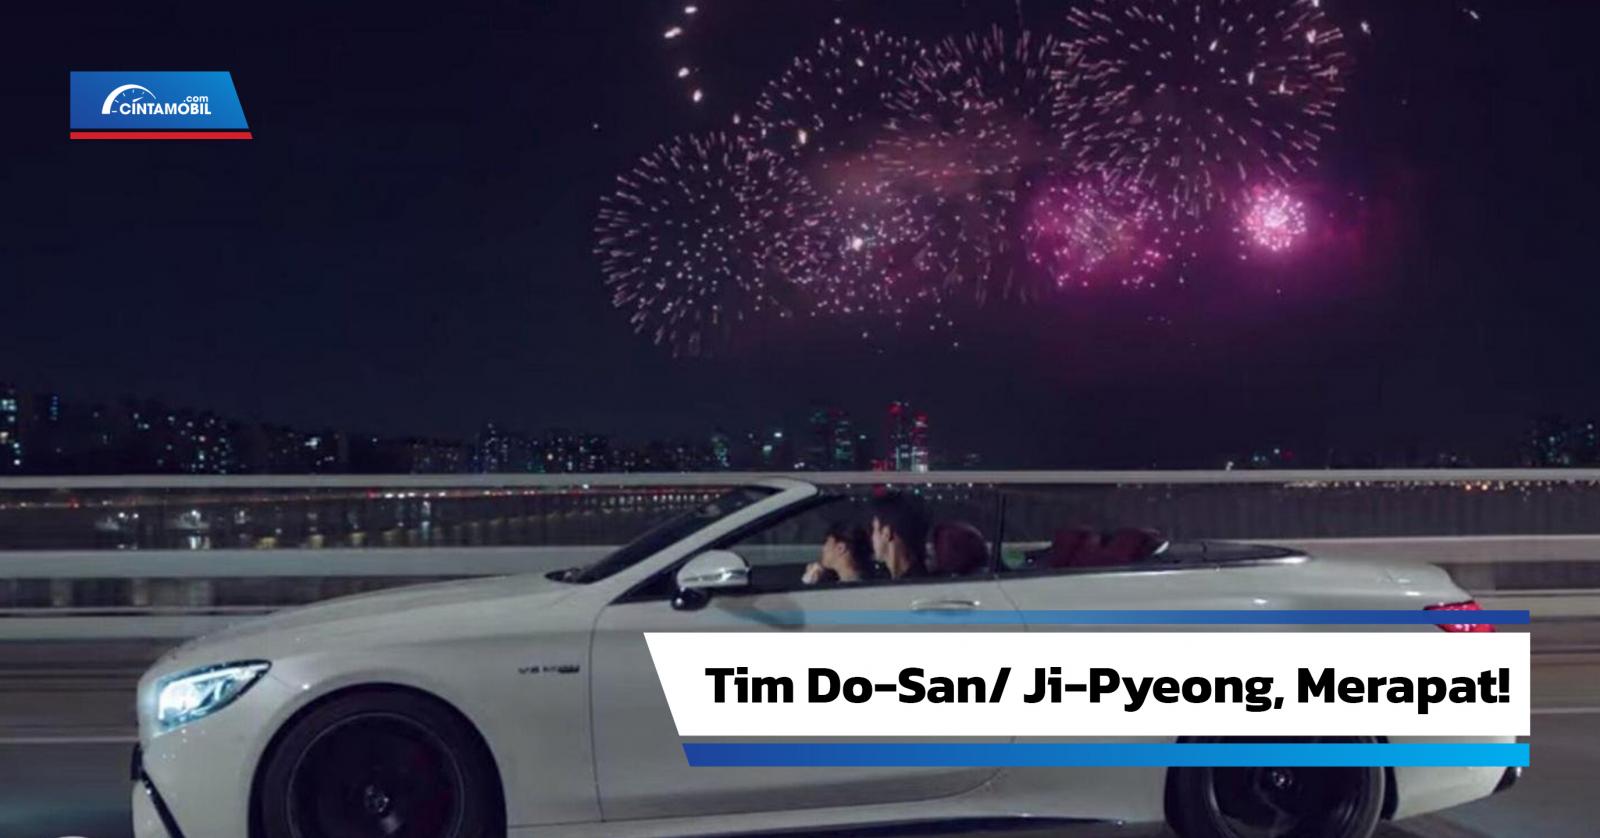 Mobil di Drama Korea Start Up Dari Sportscar 4 pintu 